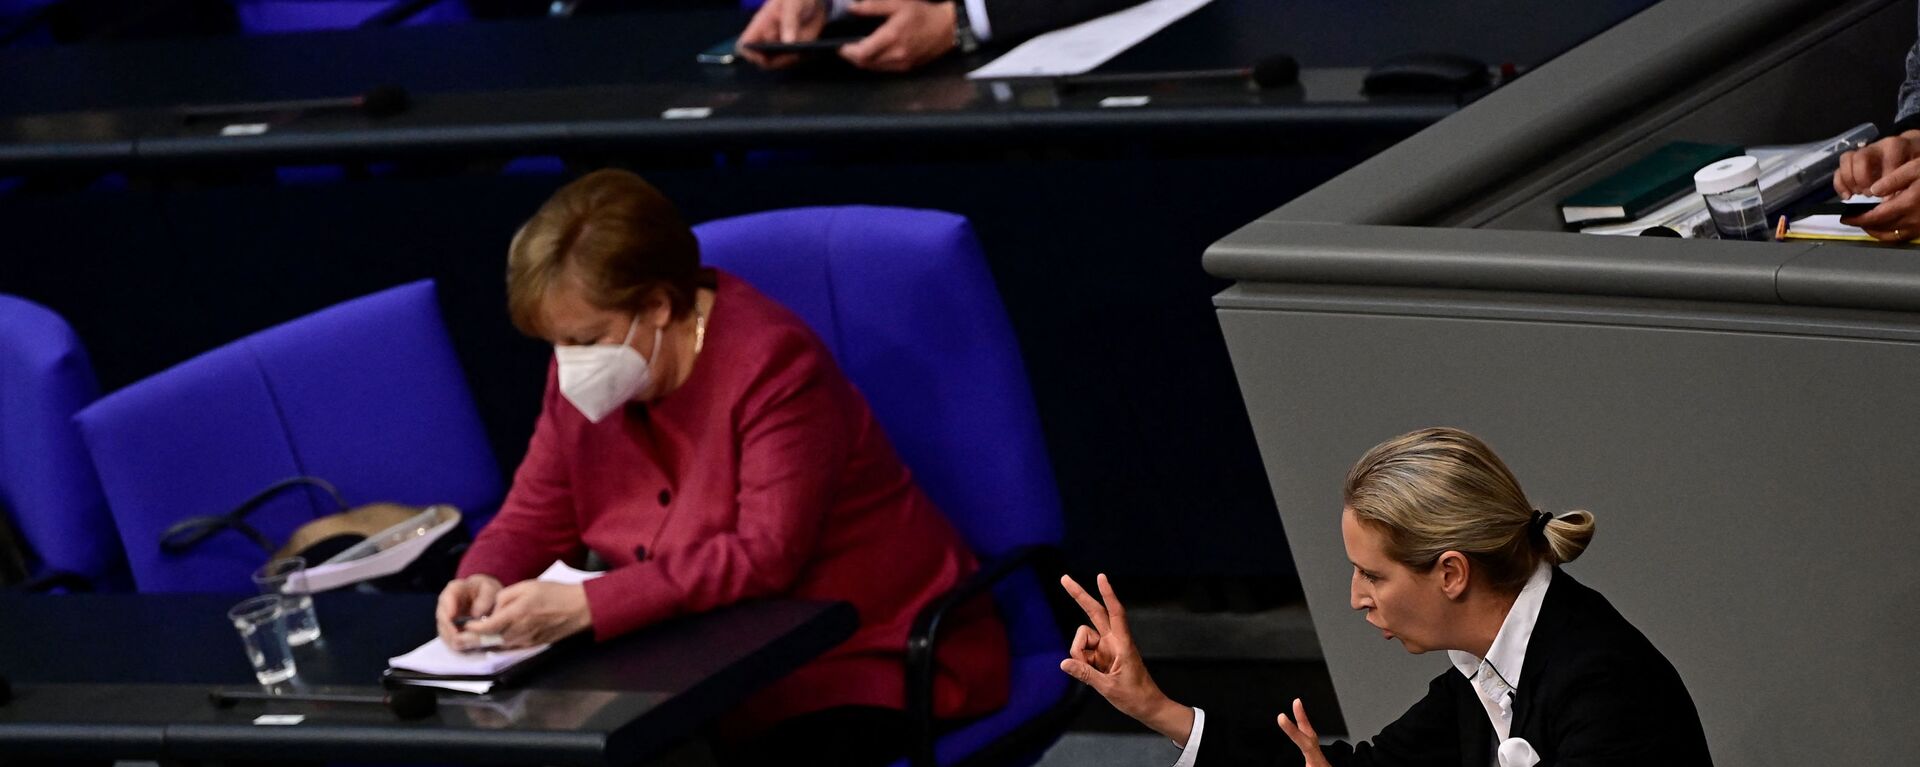 Ангела Меркел гледа у мобилни телефон за време говора Алис Вејдел из Алтернативе за Немачку у Бундестагу. - Sputnik Србија, 1920, 24.06.2021